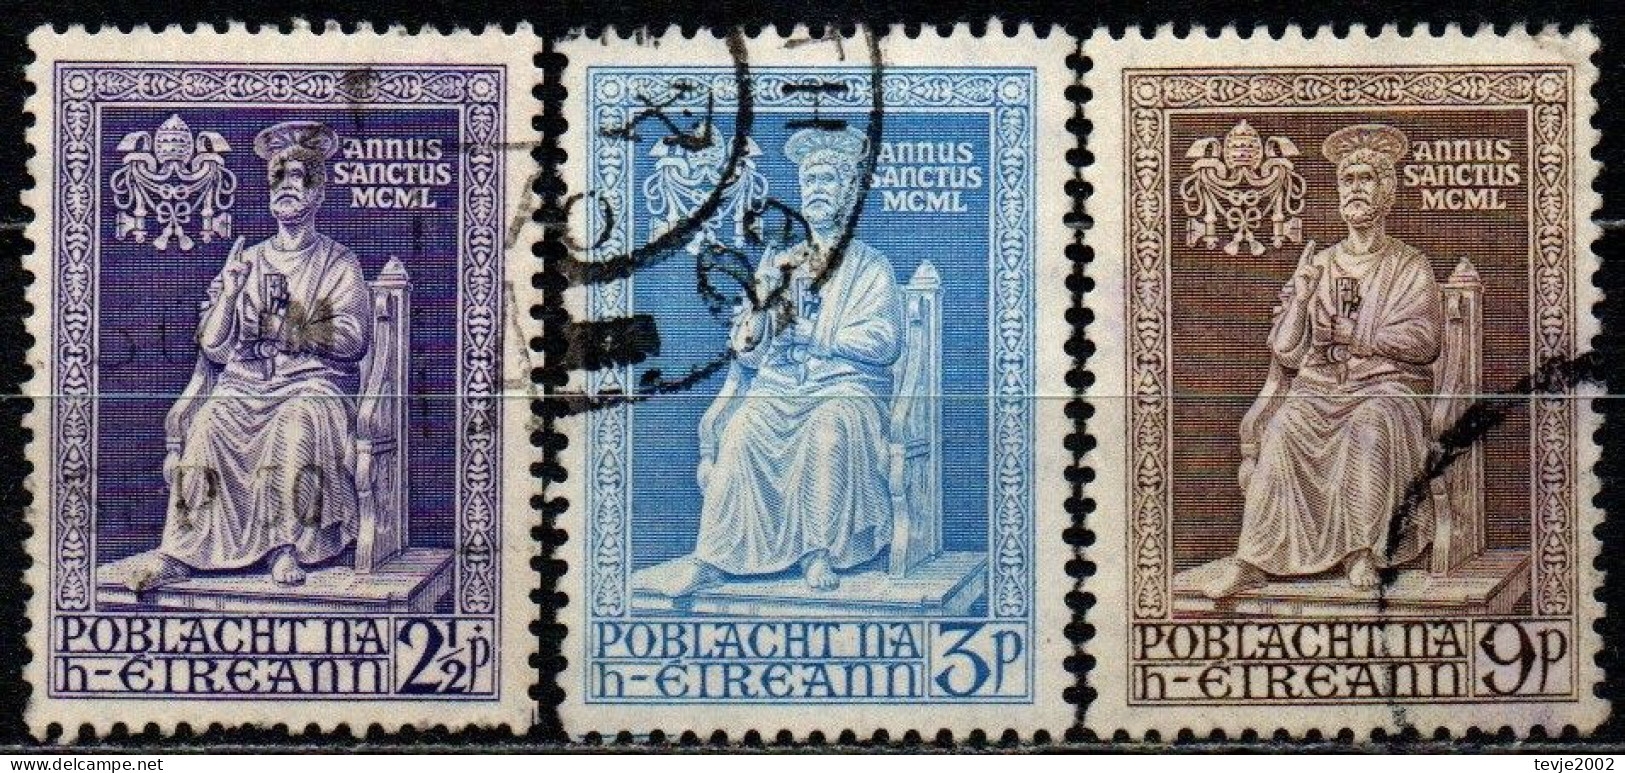 Irland Eire 1950 - Mi.Nr. 111 - 113 - Gestempelt Used - Gebraucht